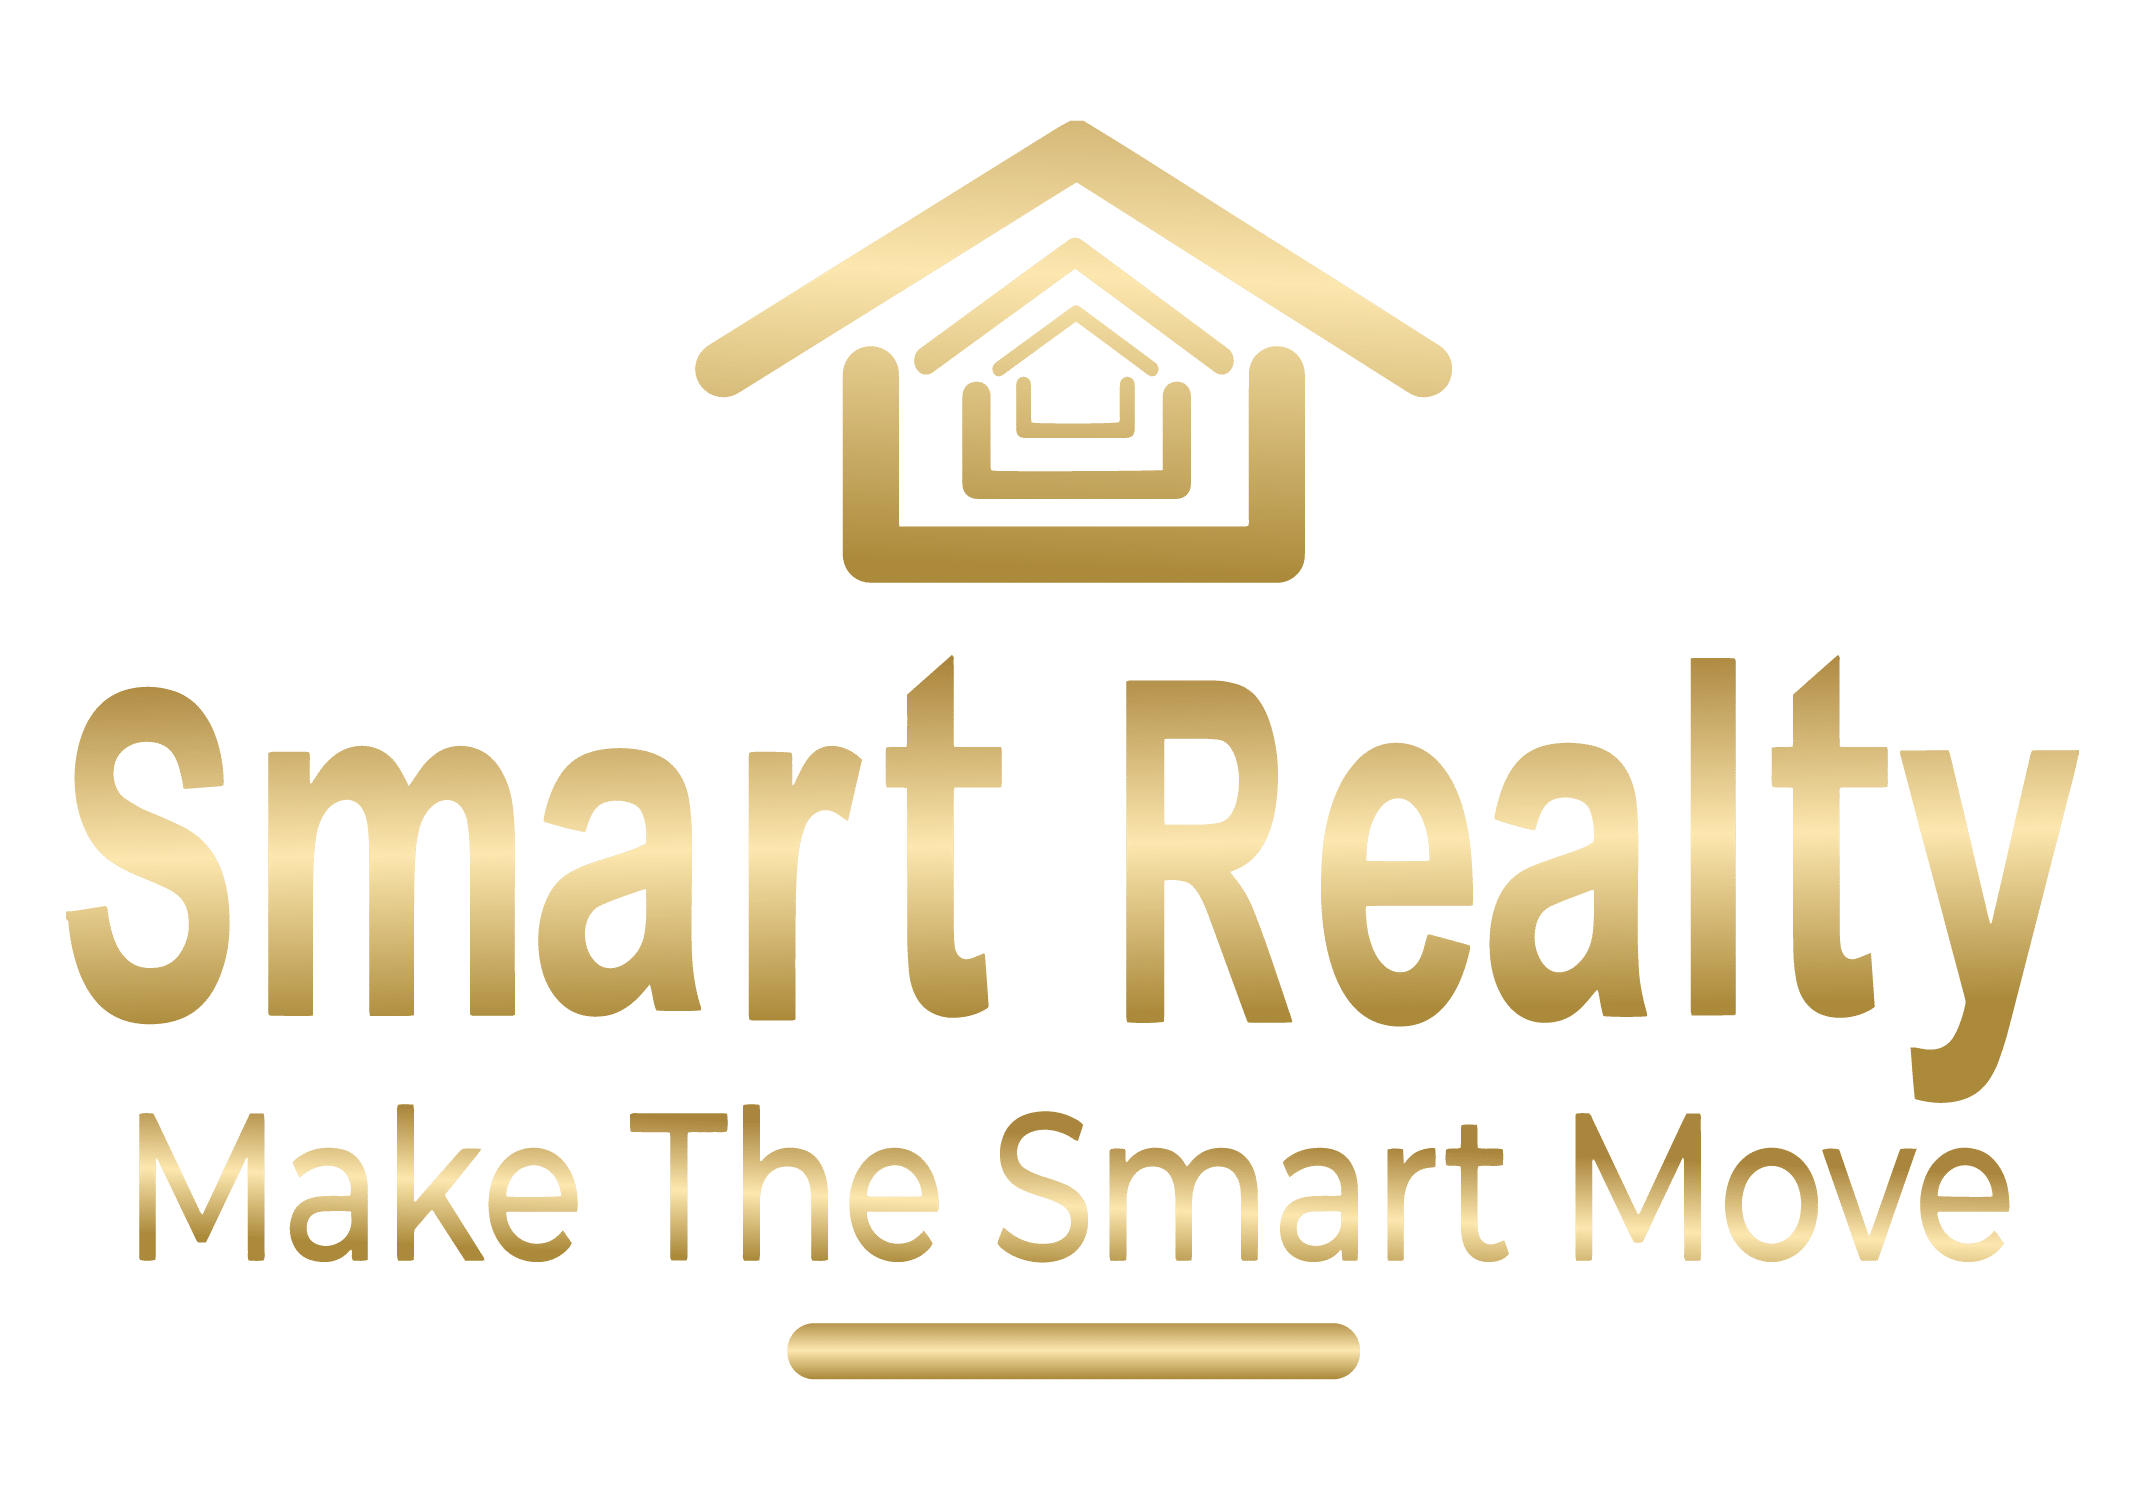 Smart Realty Pty Ltd - Kenwick - Real Estate Agency